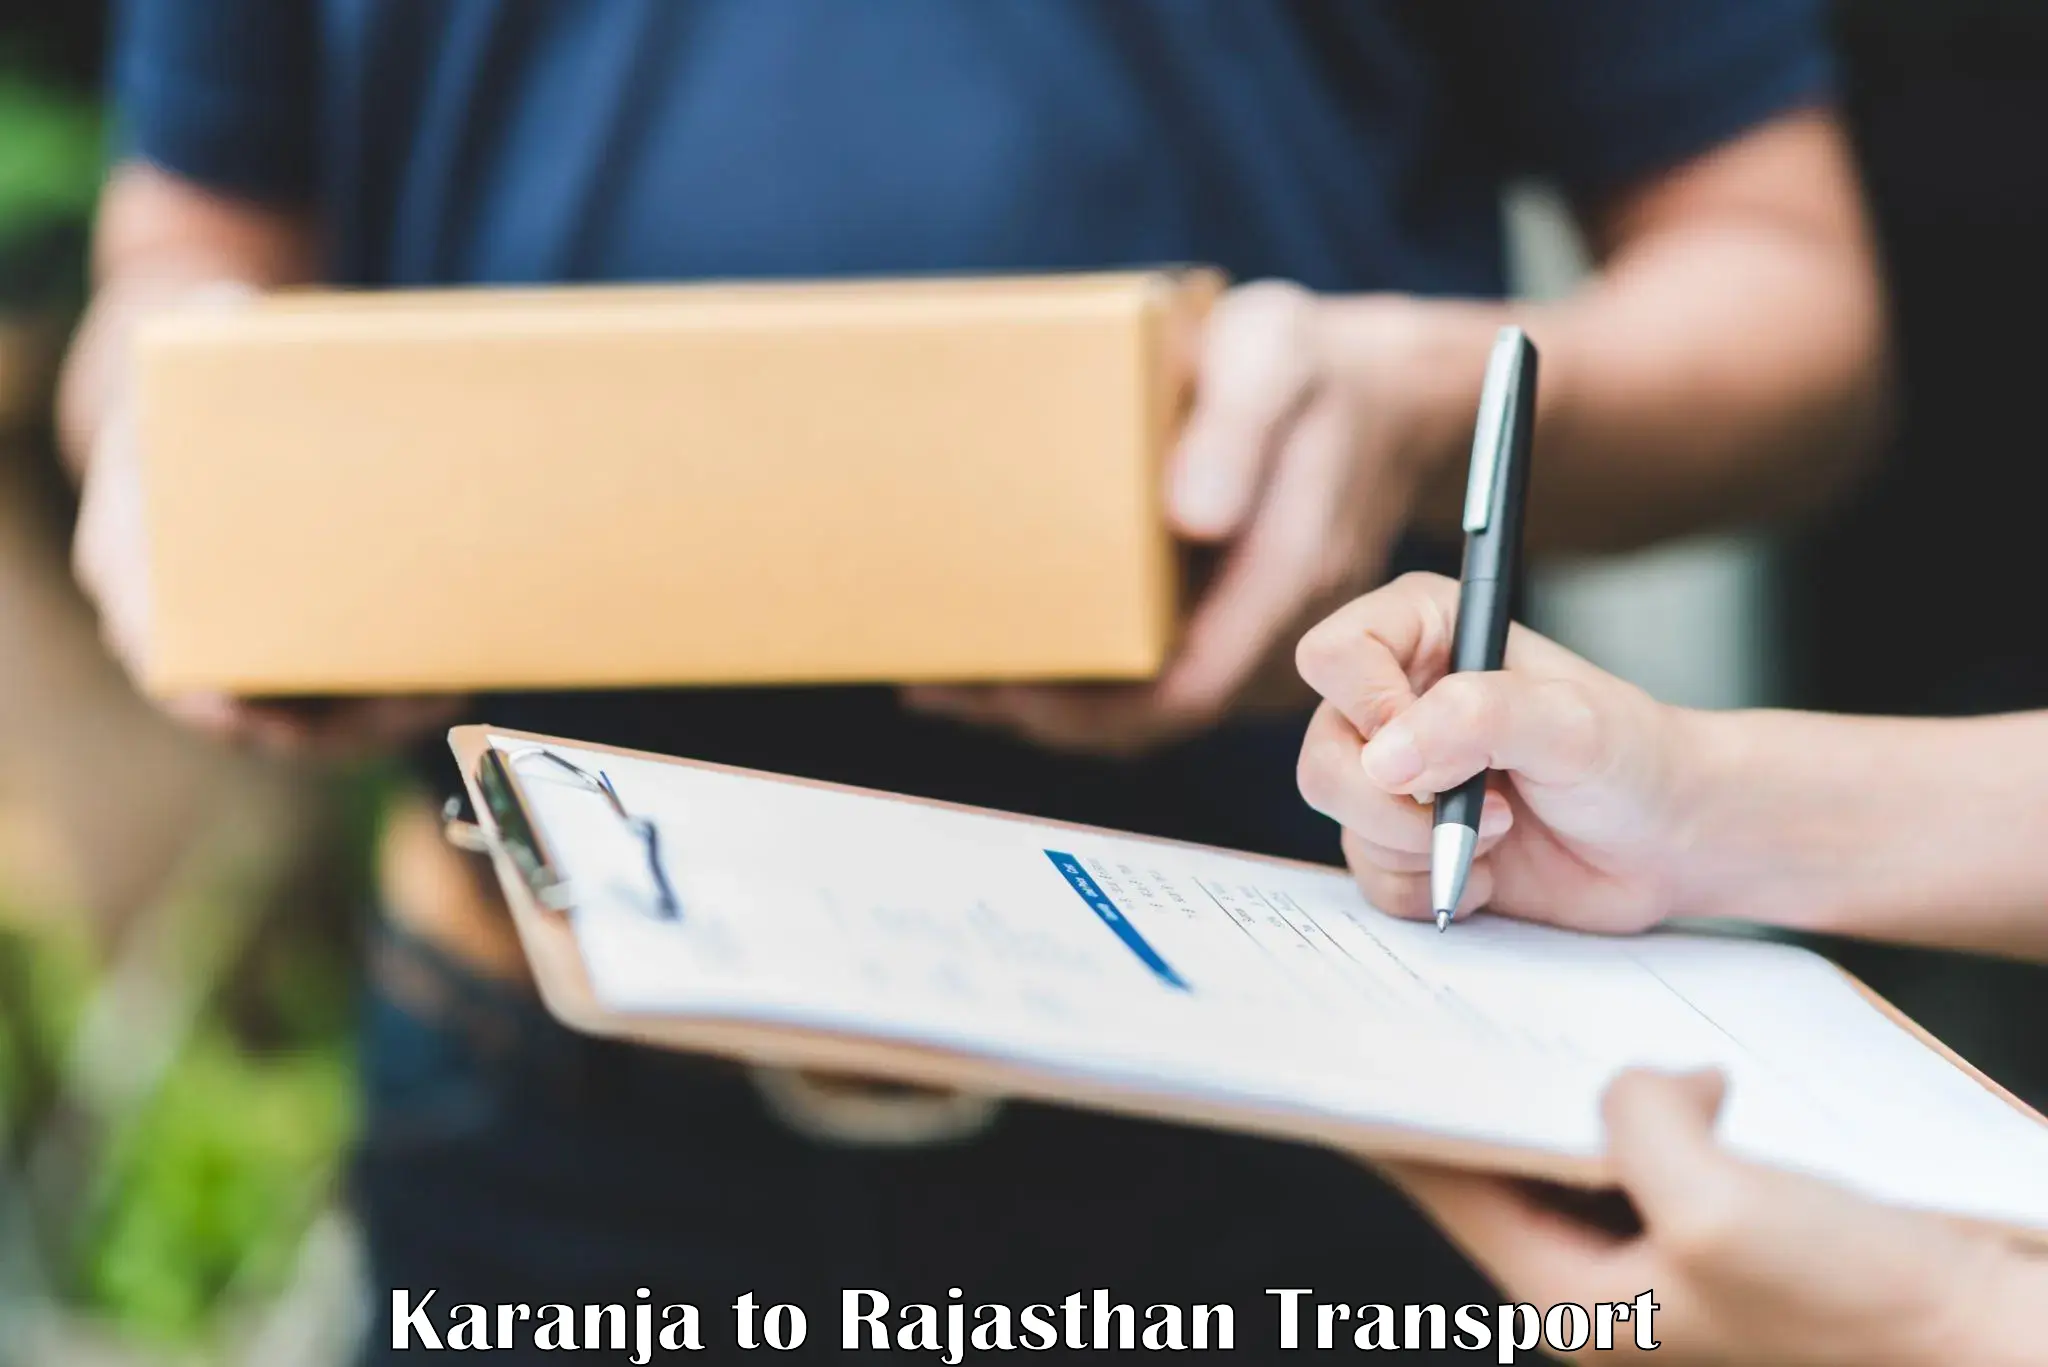 Furniture transport service Karanja to Rajasthan